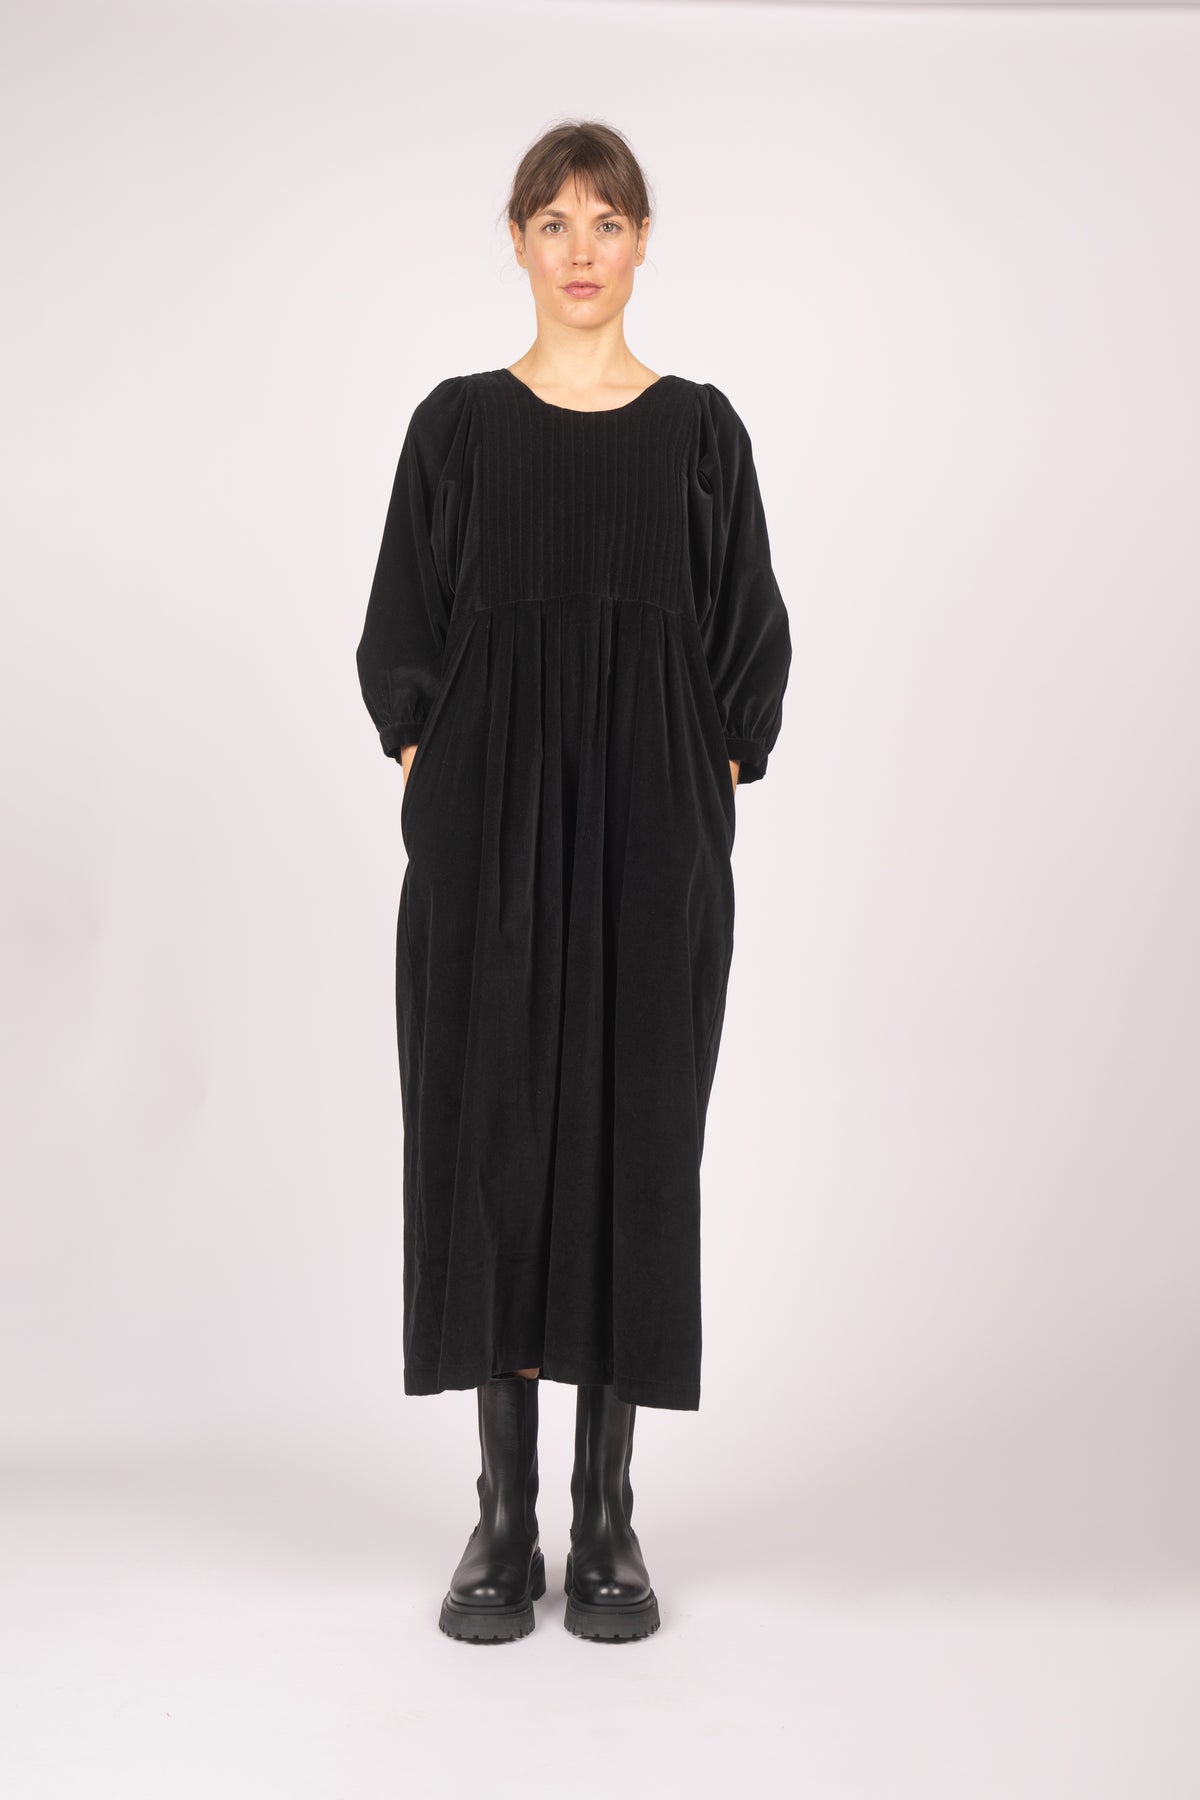 model wears black velvet quilt dress from fashion brand THE REGULAR